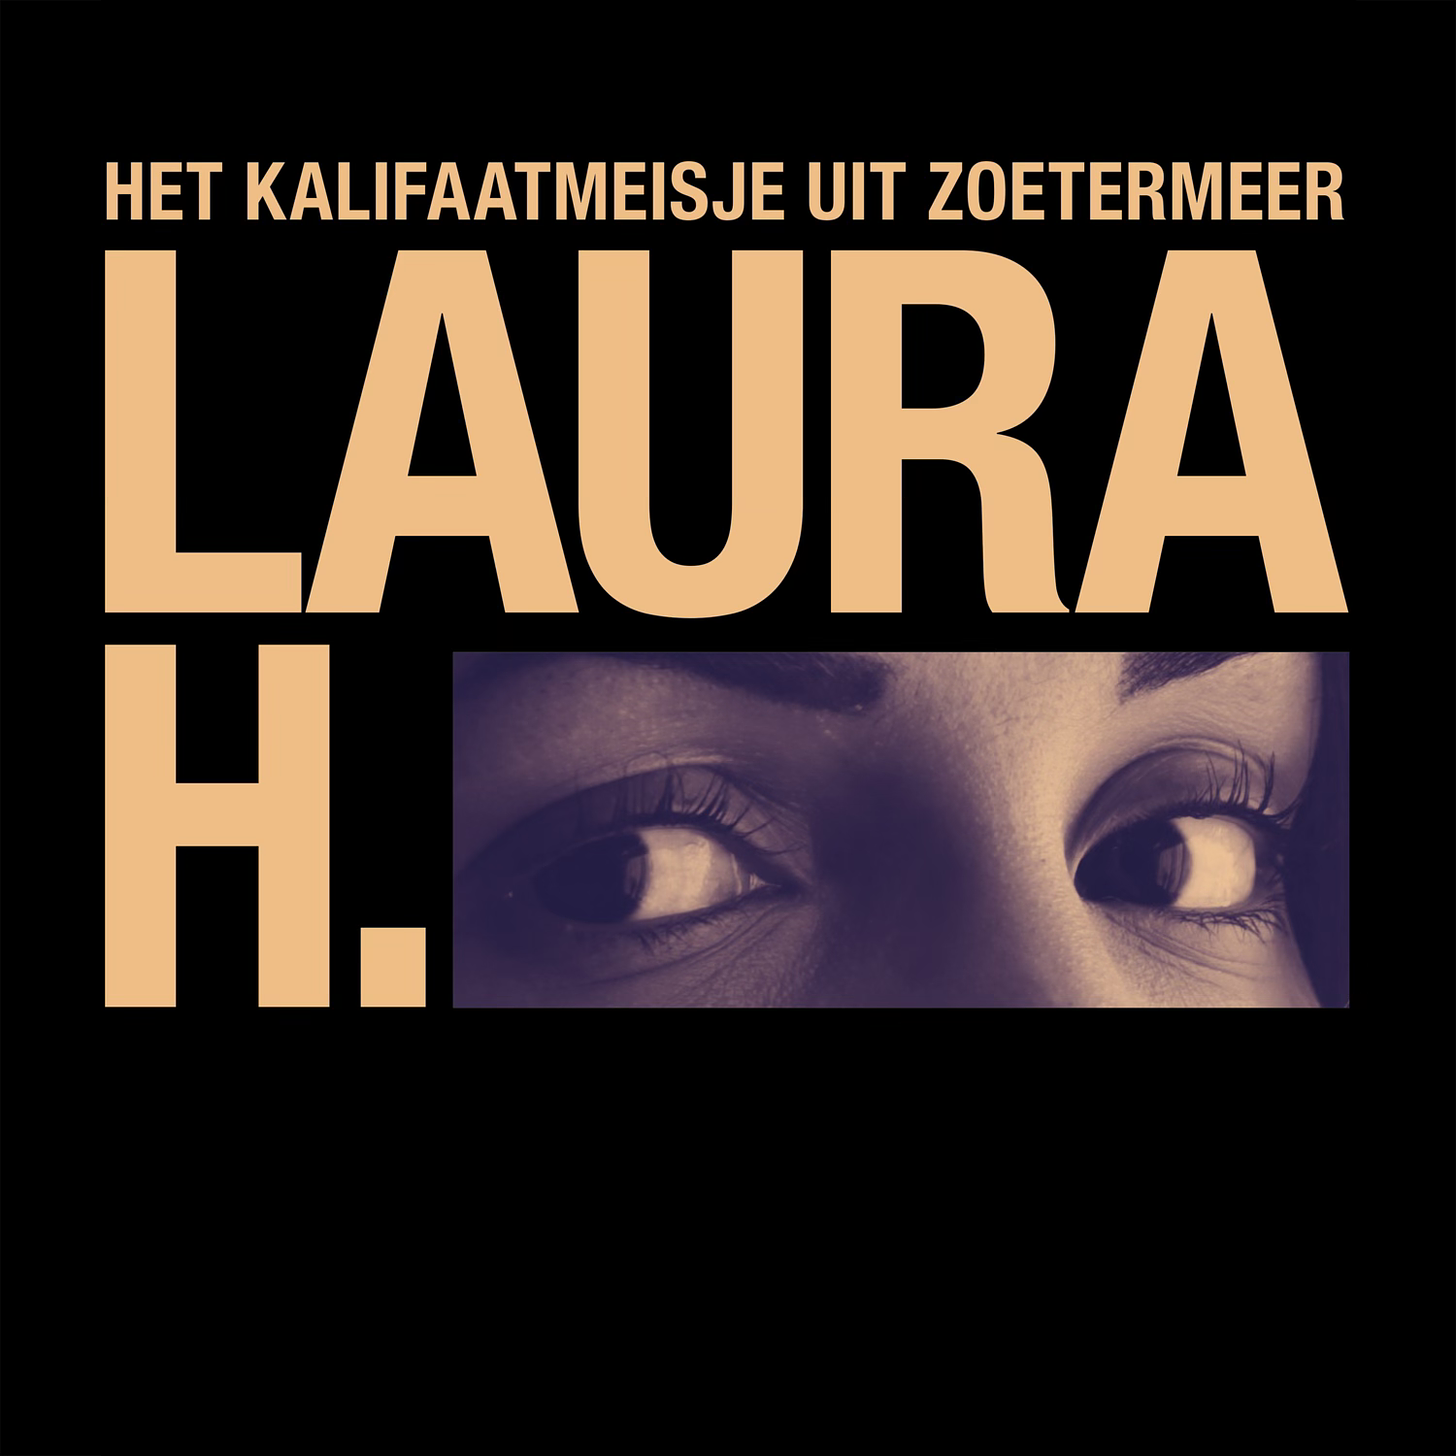 artwork van laura h. Je ziet de titel in oranjegeel tegen een zwarte achtergrond, en een foto van de ogen van Laura H waar normaliter een balkje zou zitten om iemand anoniem te houden